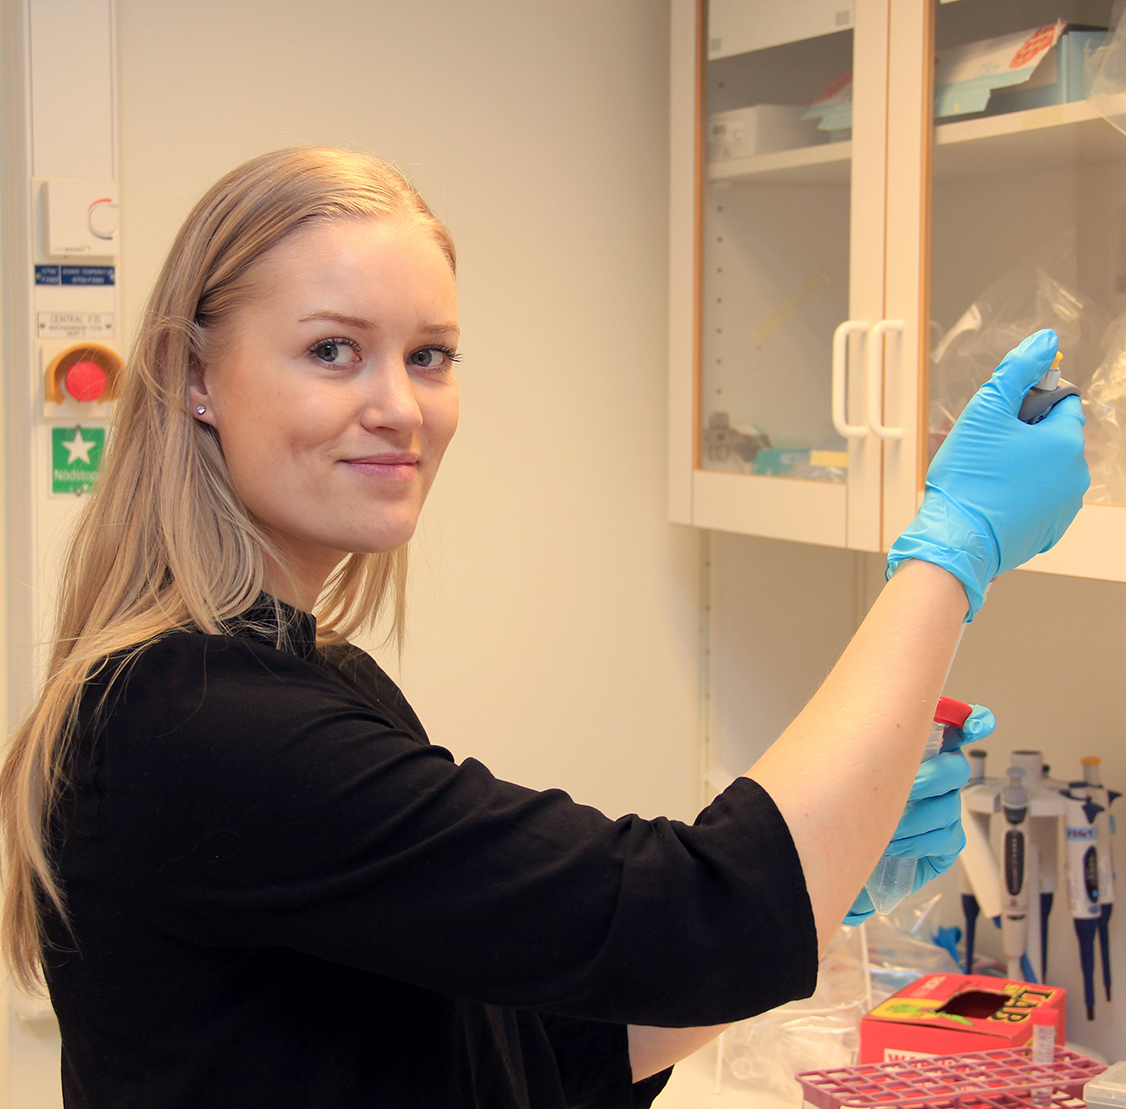 Saga Helgadóttir i laboratorium